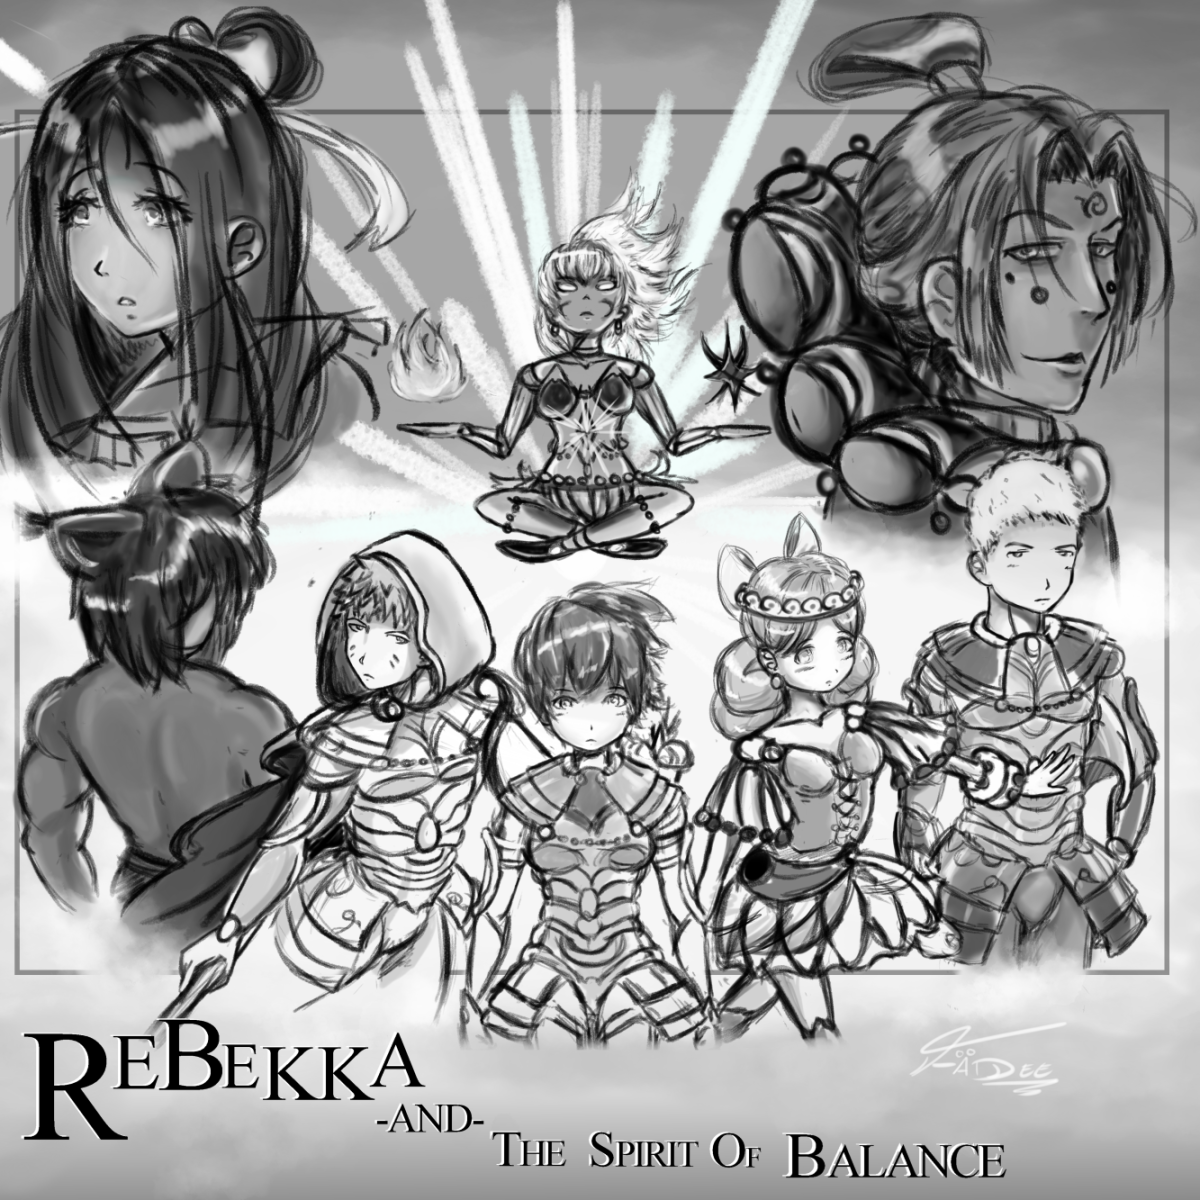 Rebekka: Prologue